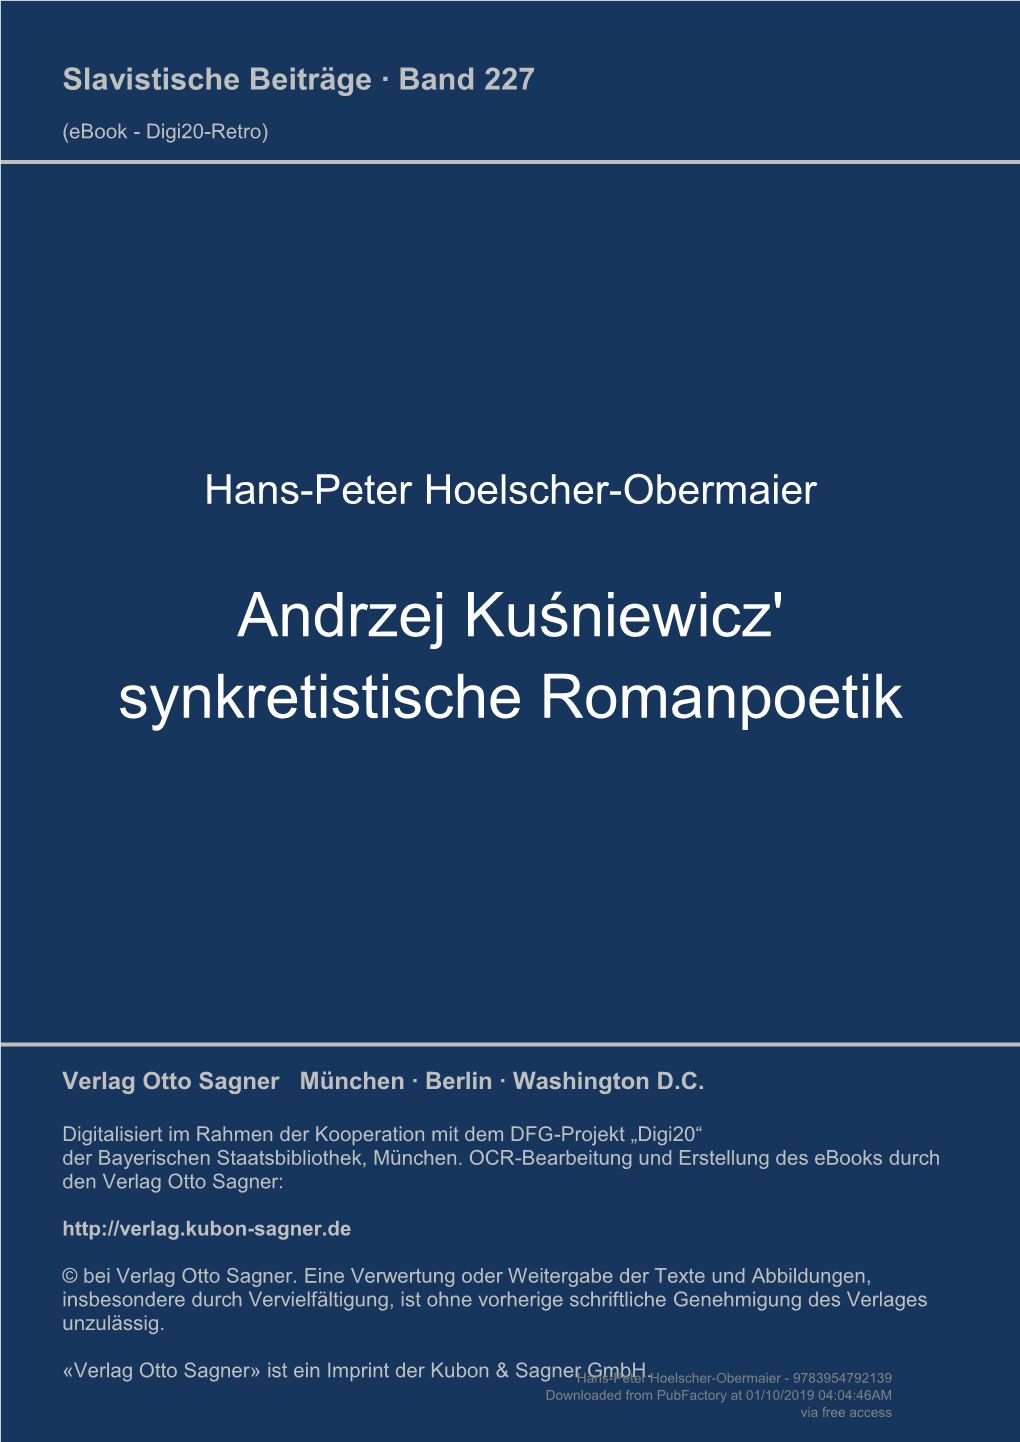 Andrzej Kuśniewicz' Synkretistische Romanpoetik